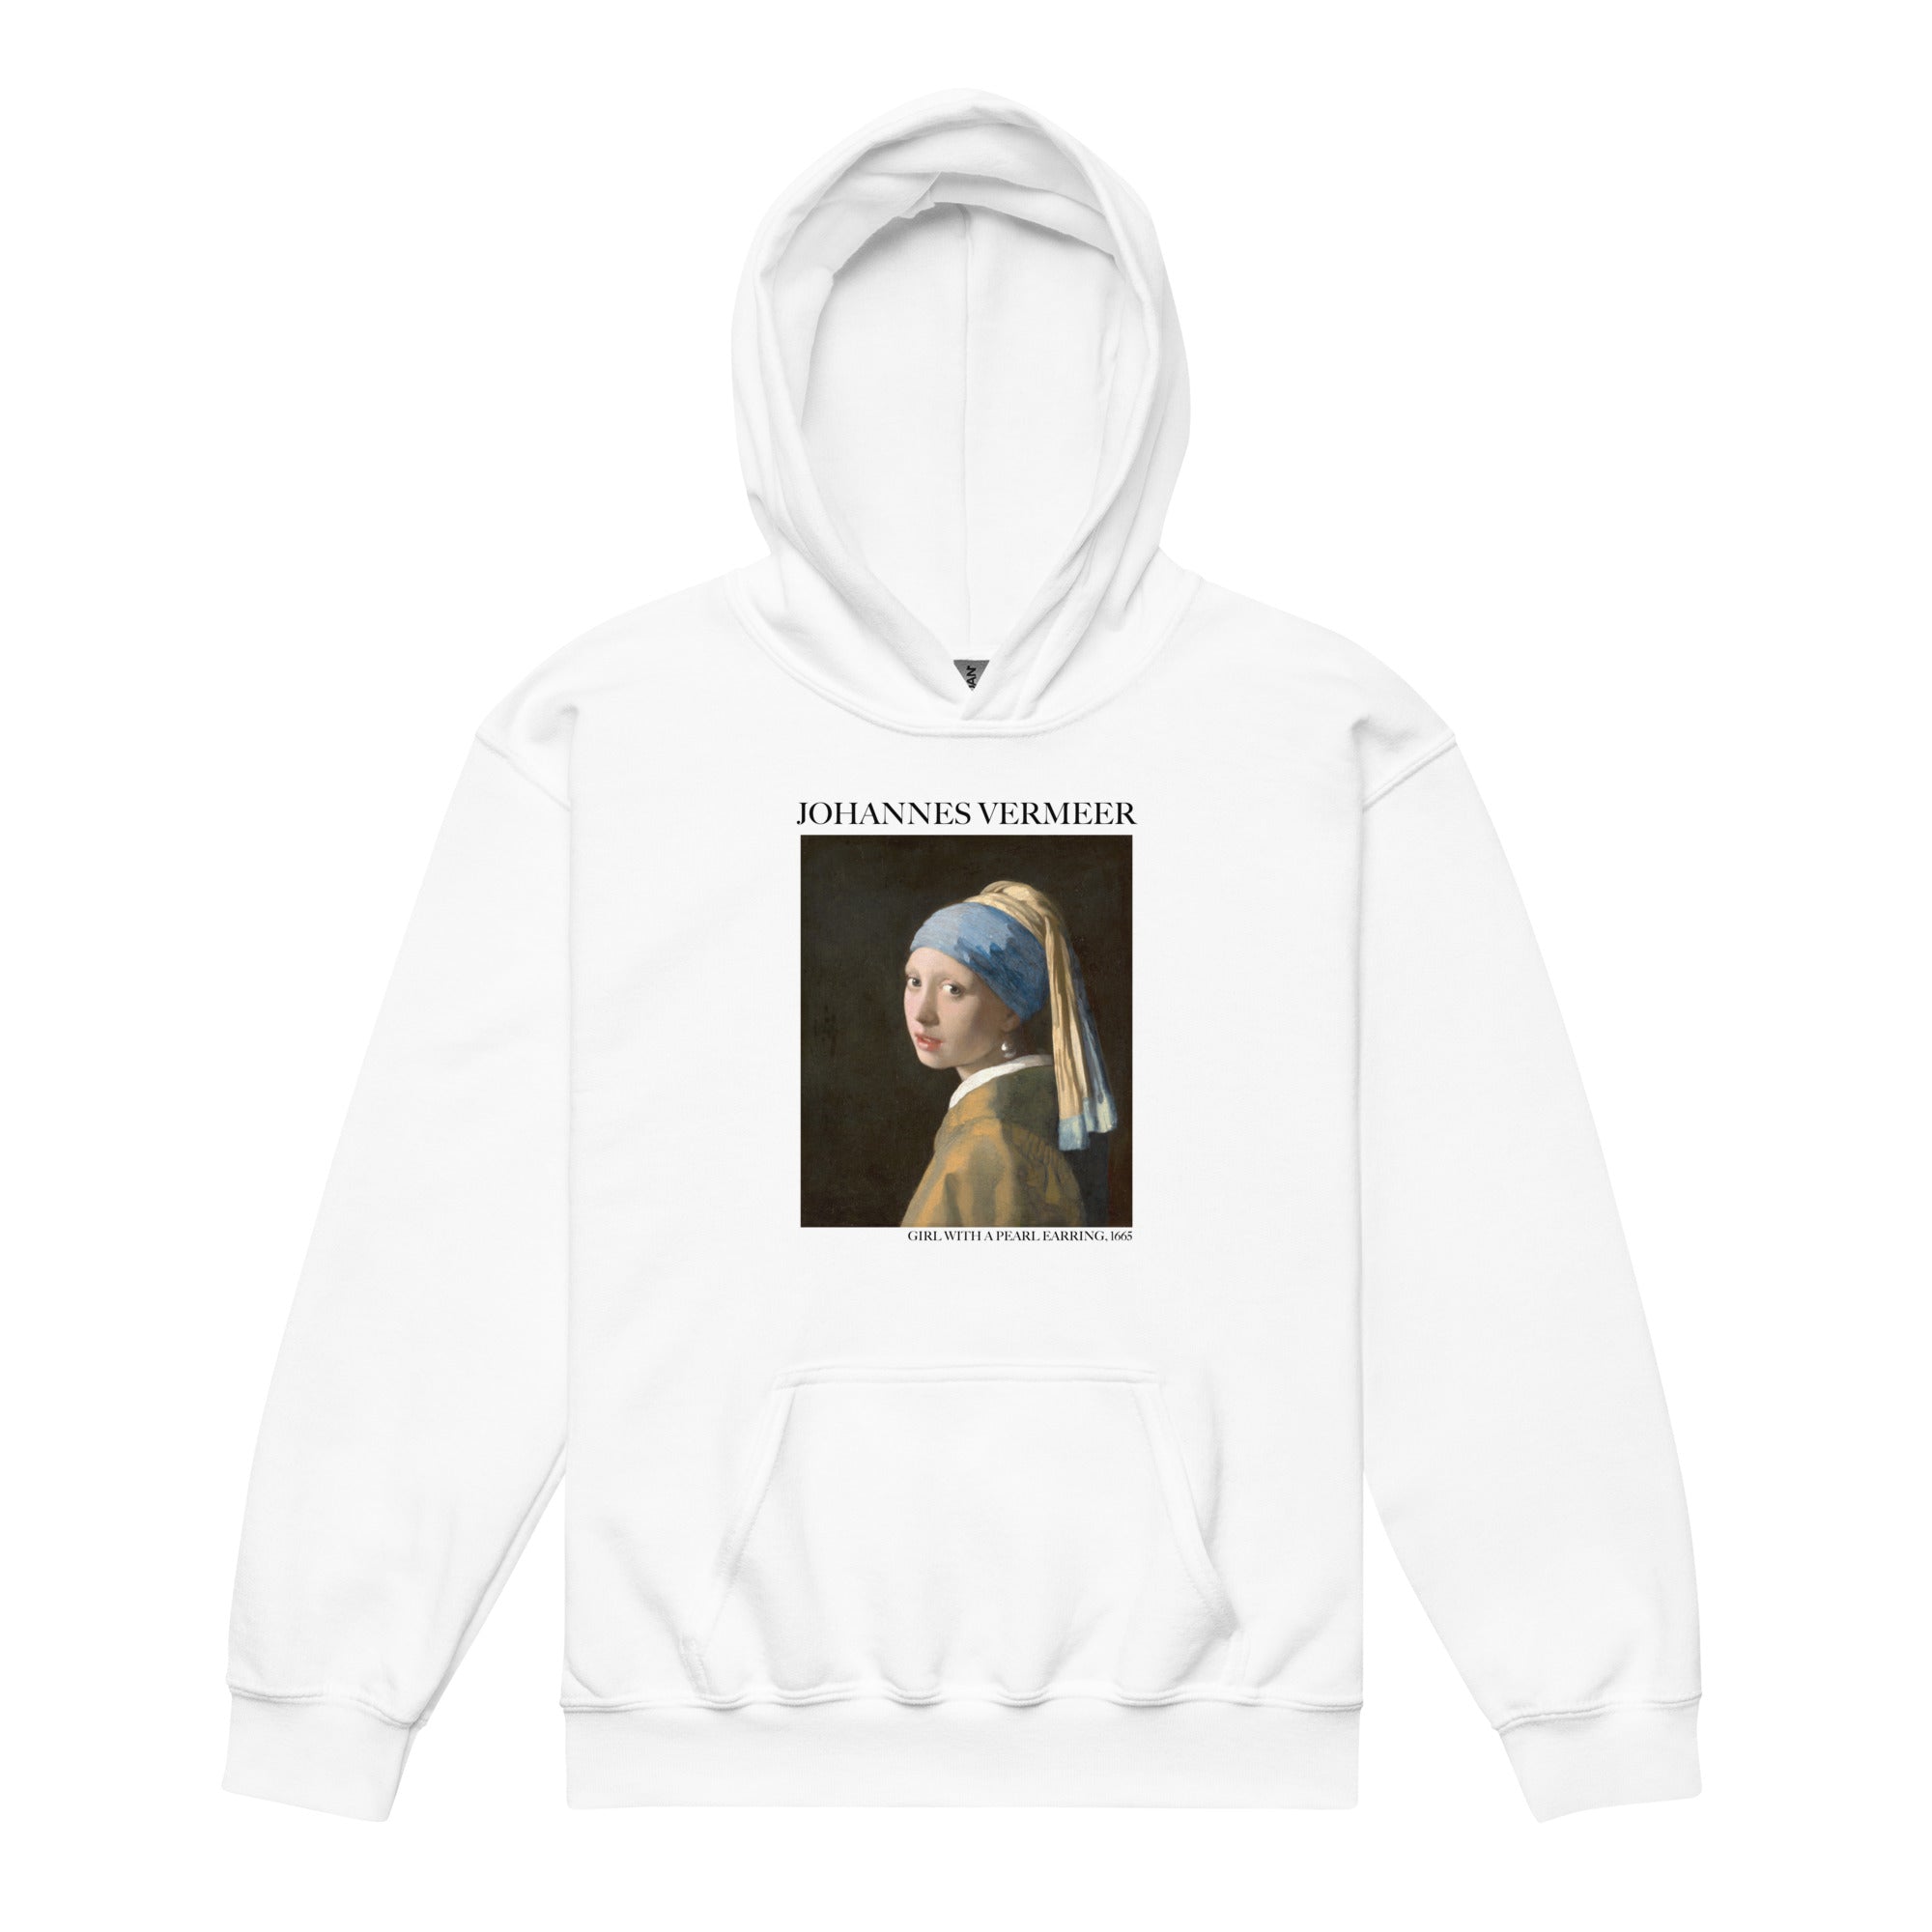 Johannes Vermeer 'Girl with a Pearl Earring' Famous Painting Hoodie | Premium Youth Art Hoodie